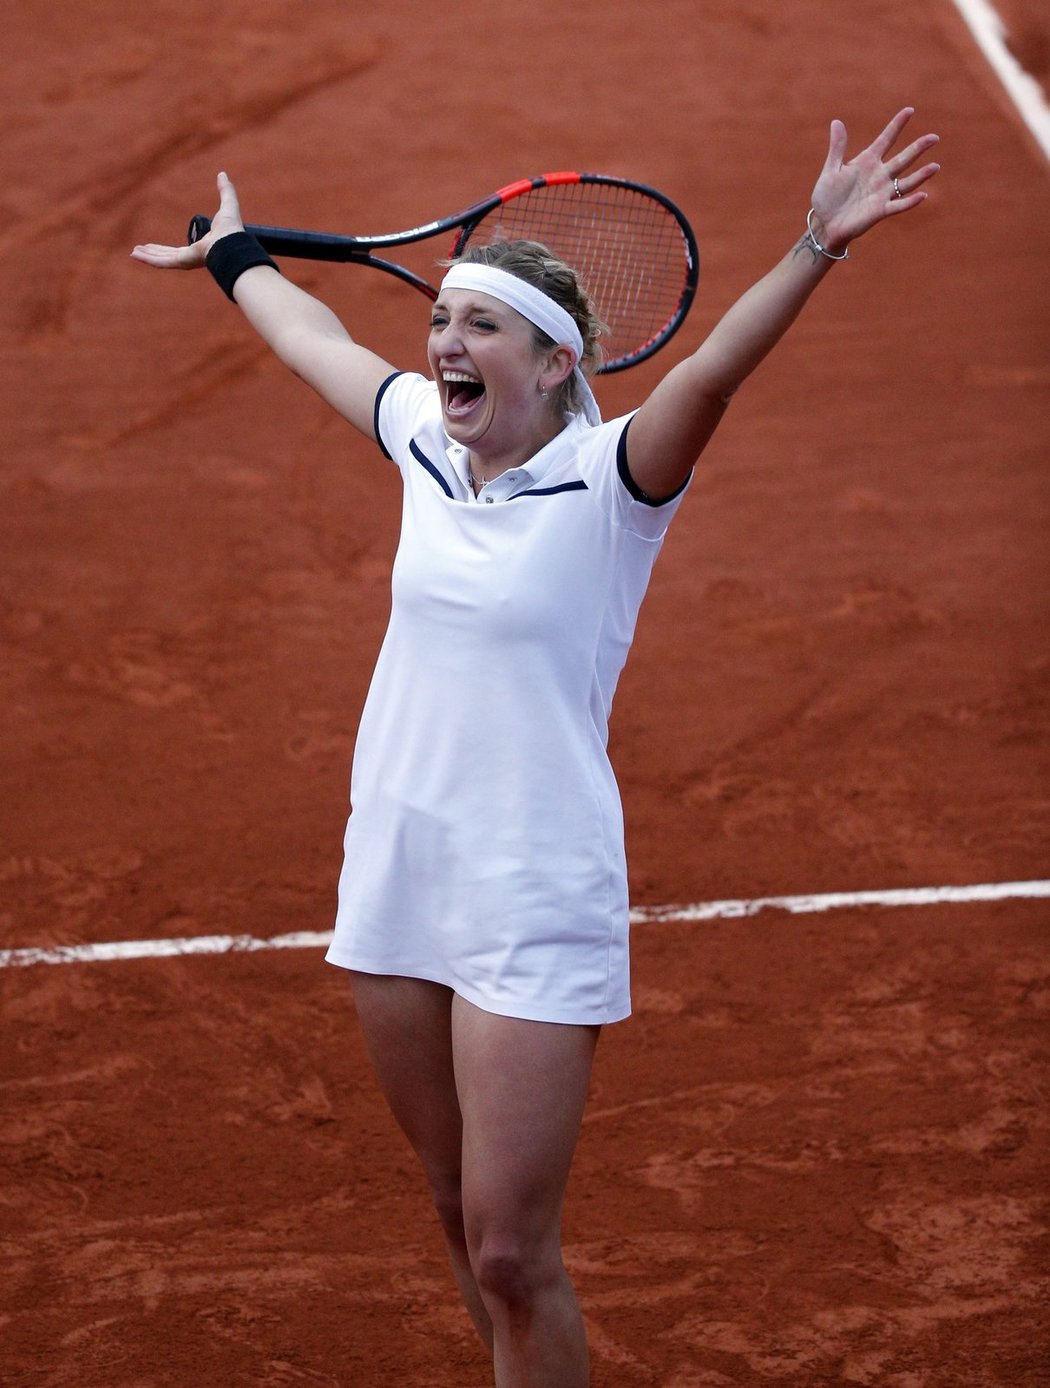 Švýcarská tenistka Timea Bacsinszká po výhře nad Petrou Kvitovou v osmifinále French Open